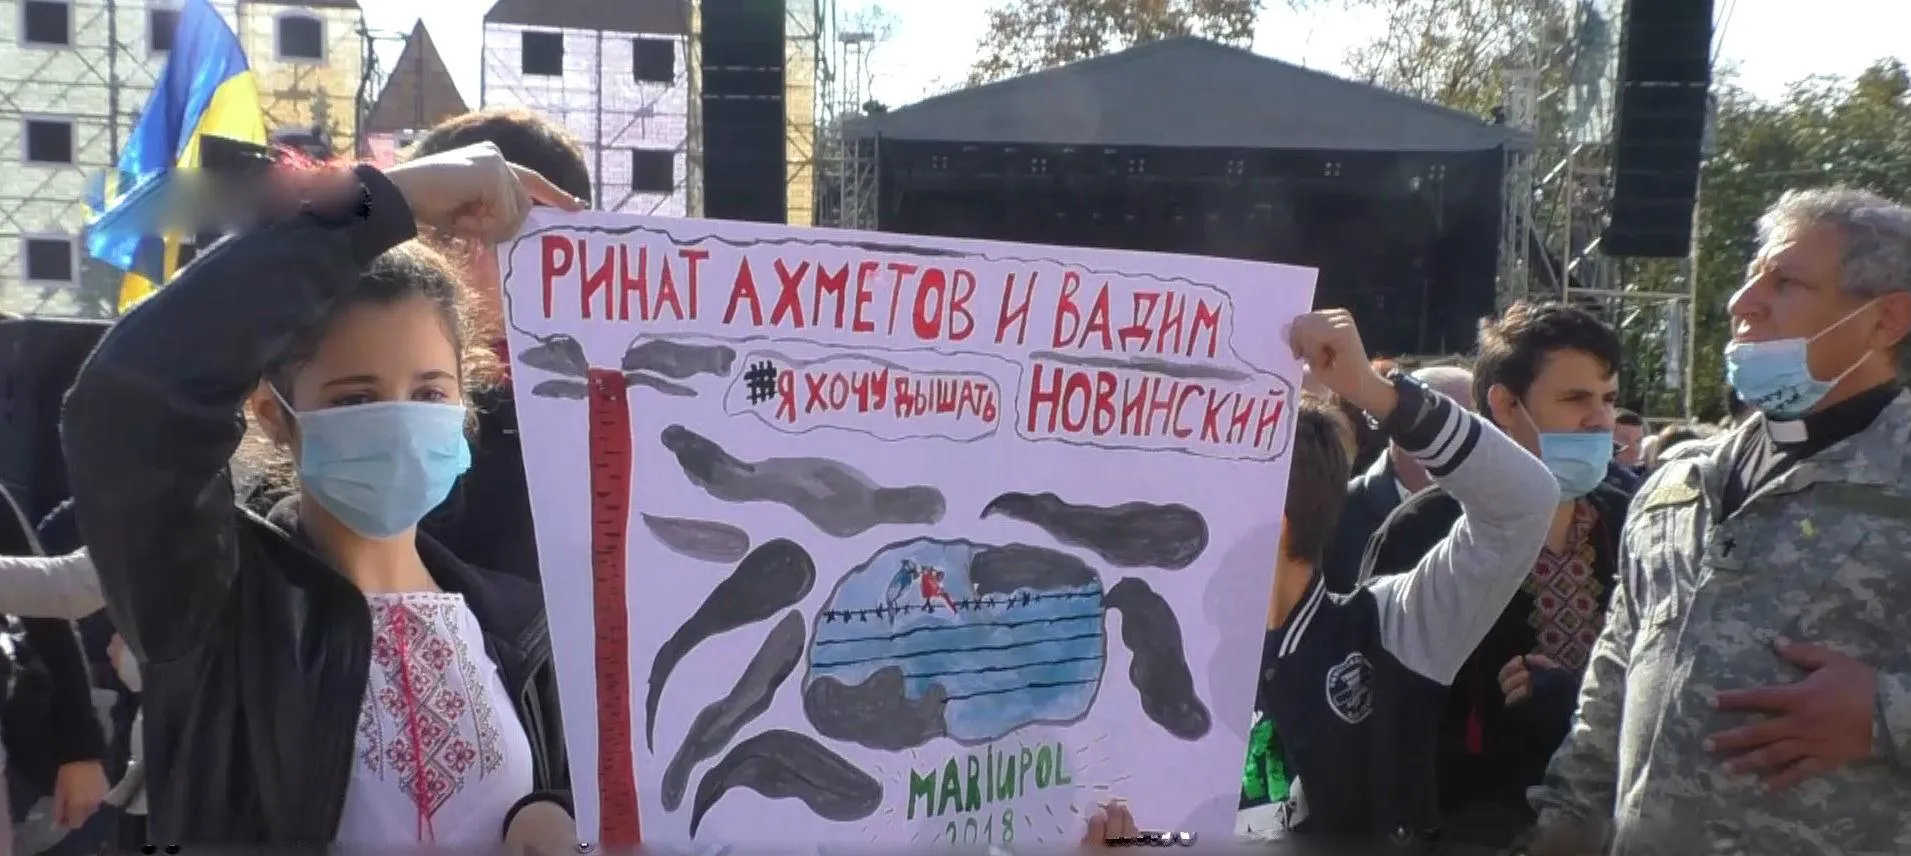 Маріуполь мітинг екологія Ахметов